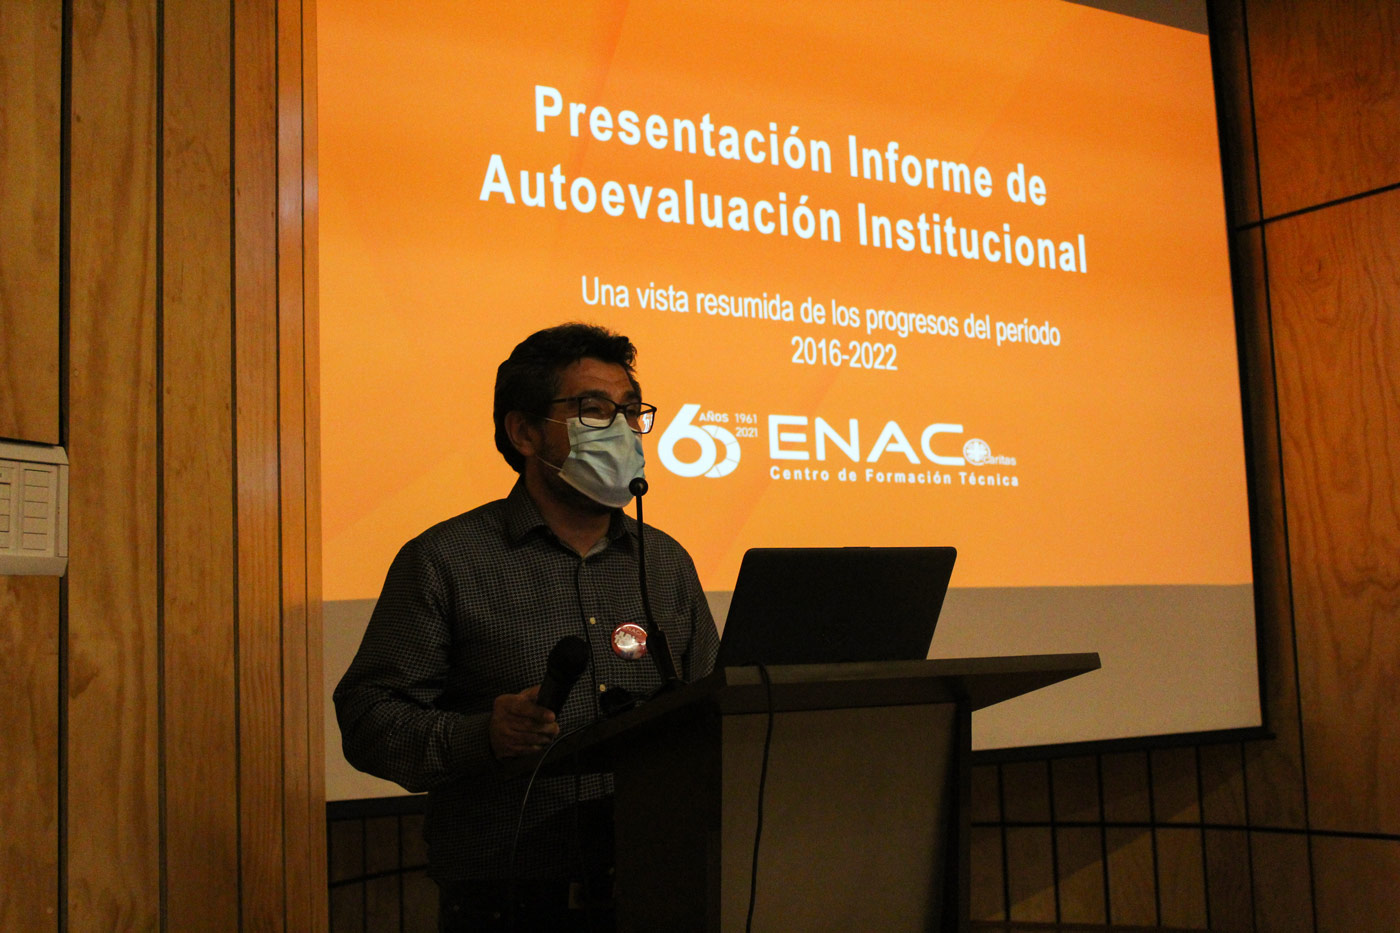 ENAC socializó el proceso de Acreditación con toda la comunidad educativa